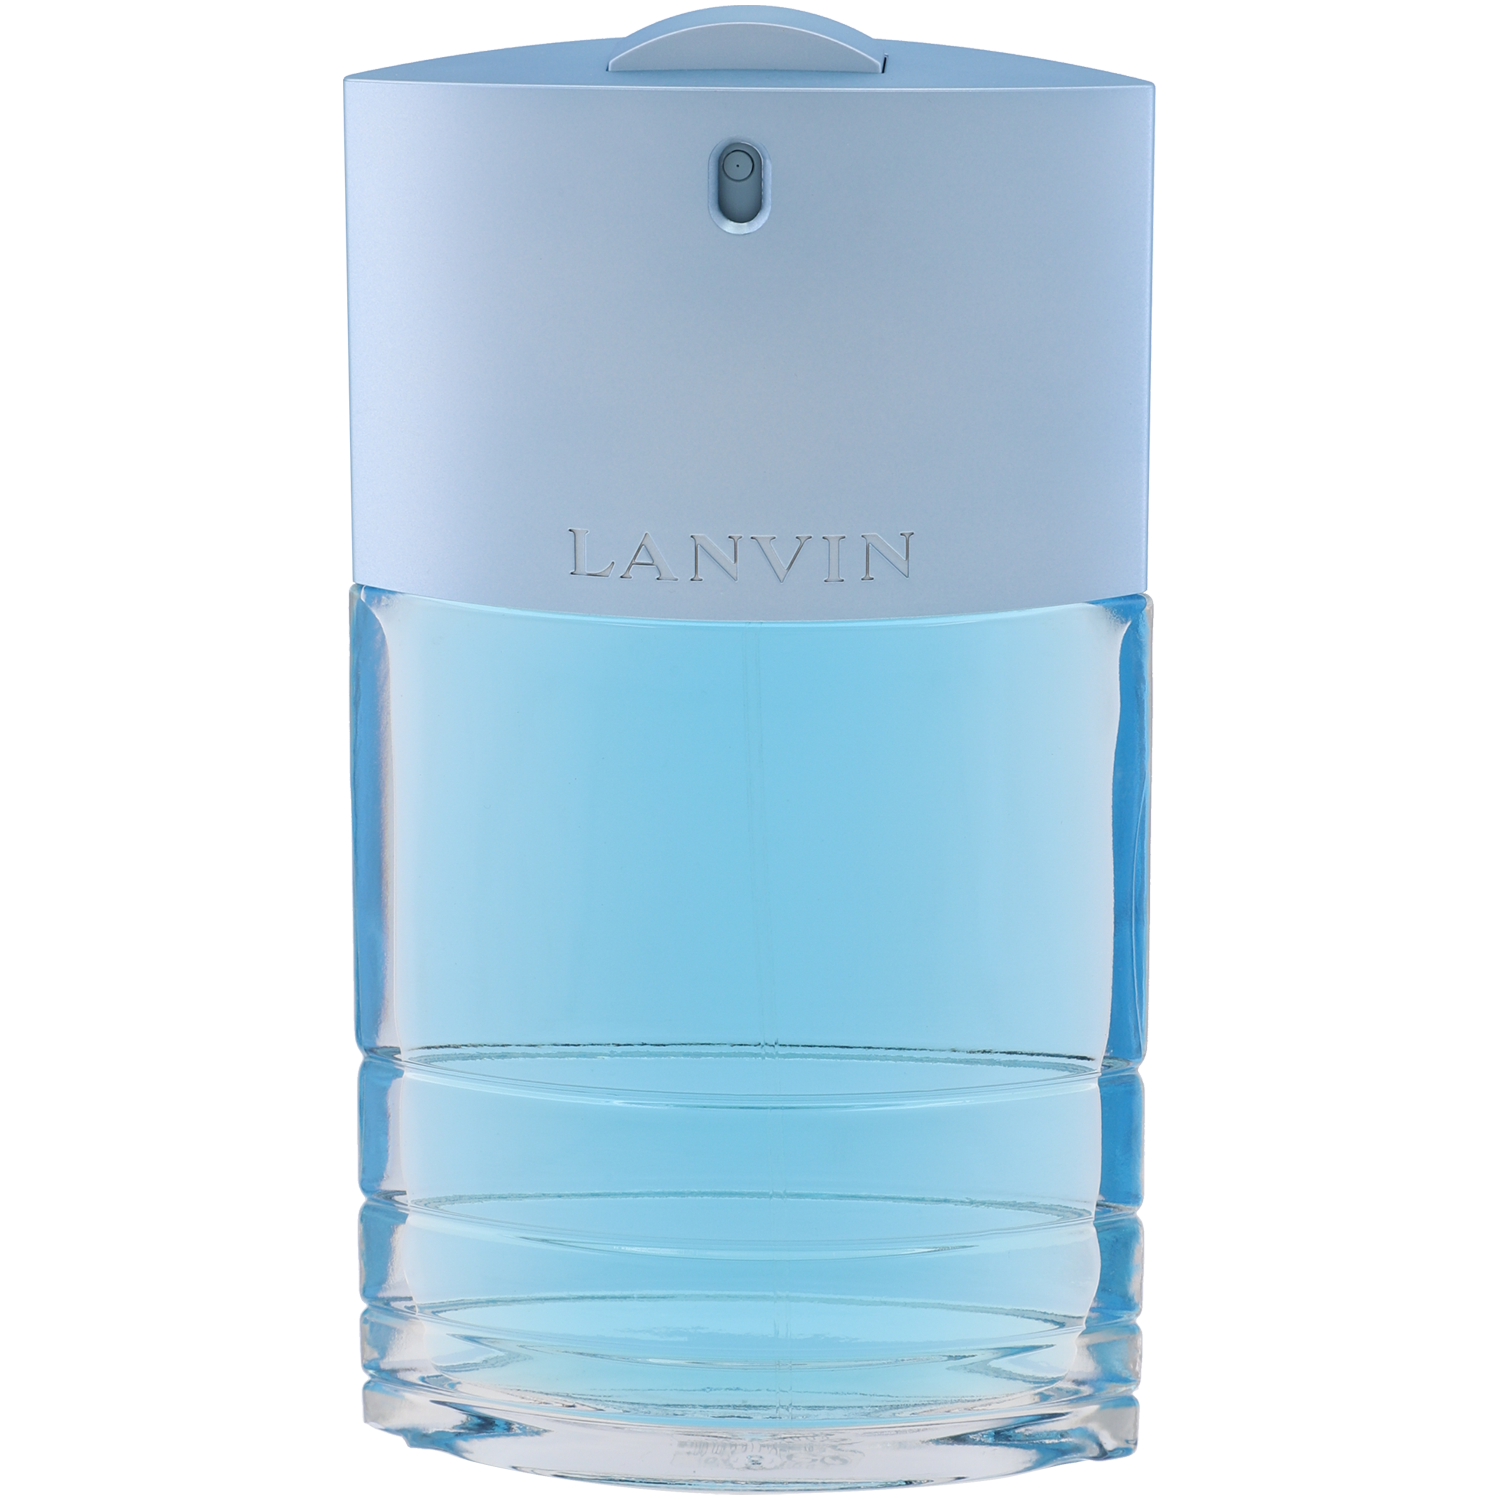 Lanvin Oxygene Homme туалетная вода для мужчин, 100 мл туалетная вода 100 мл lanvin oxygene homme